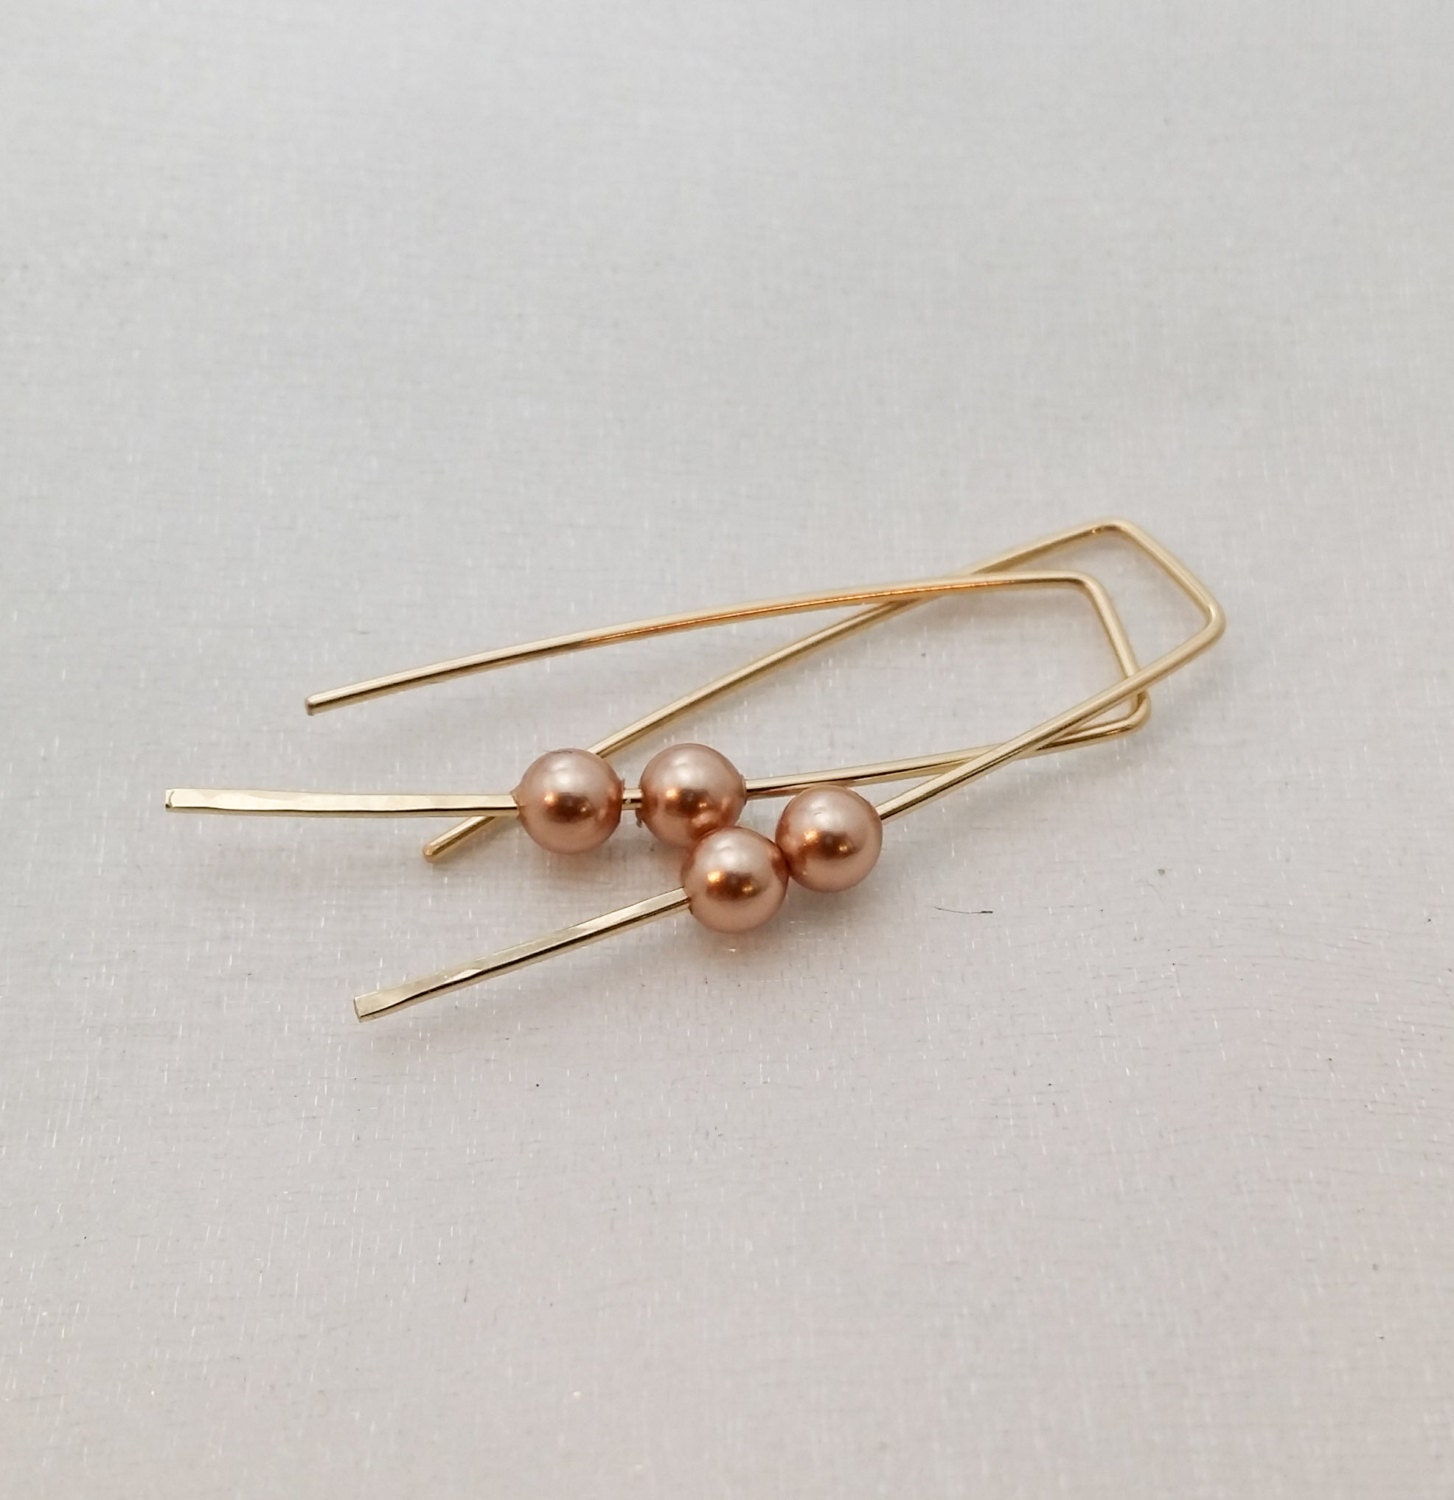 Modern earrings Gold pearl earrings minimalist wire | Etsy